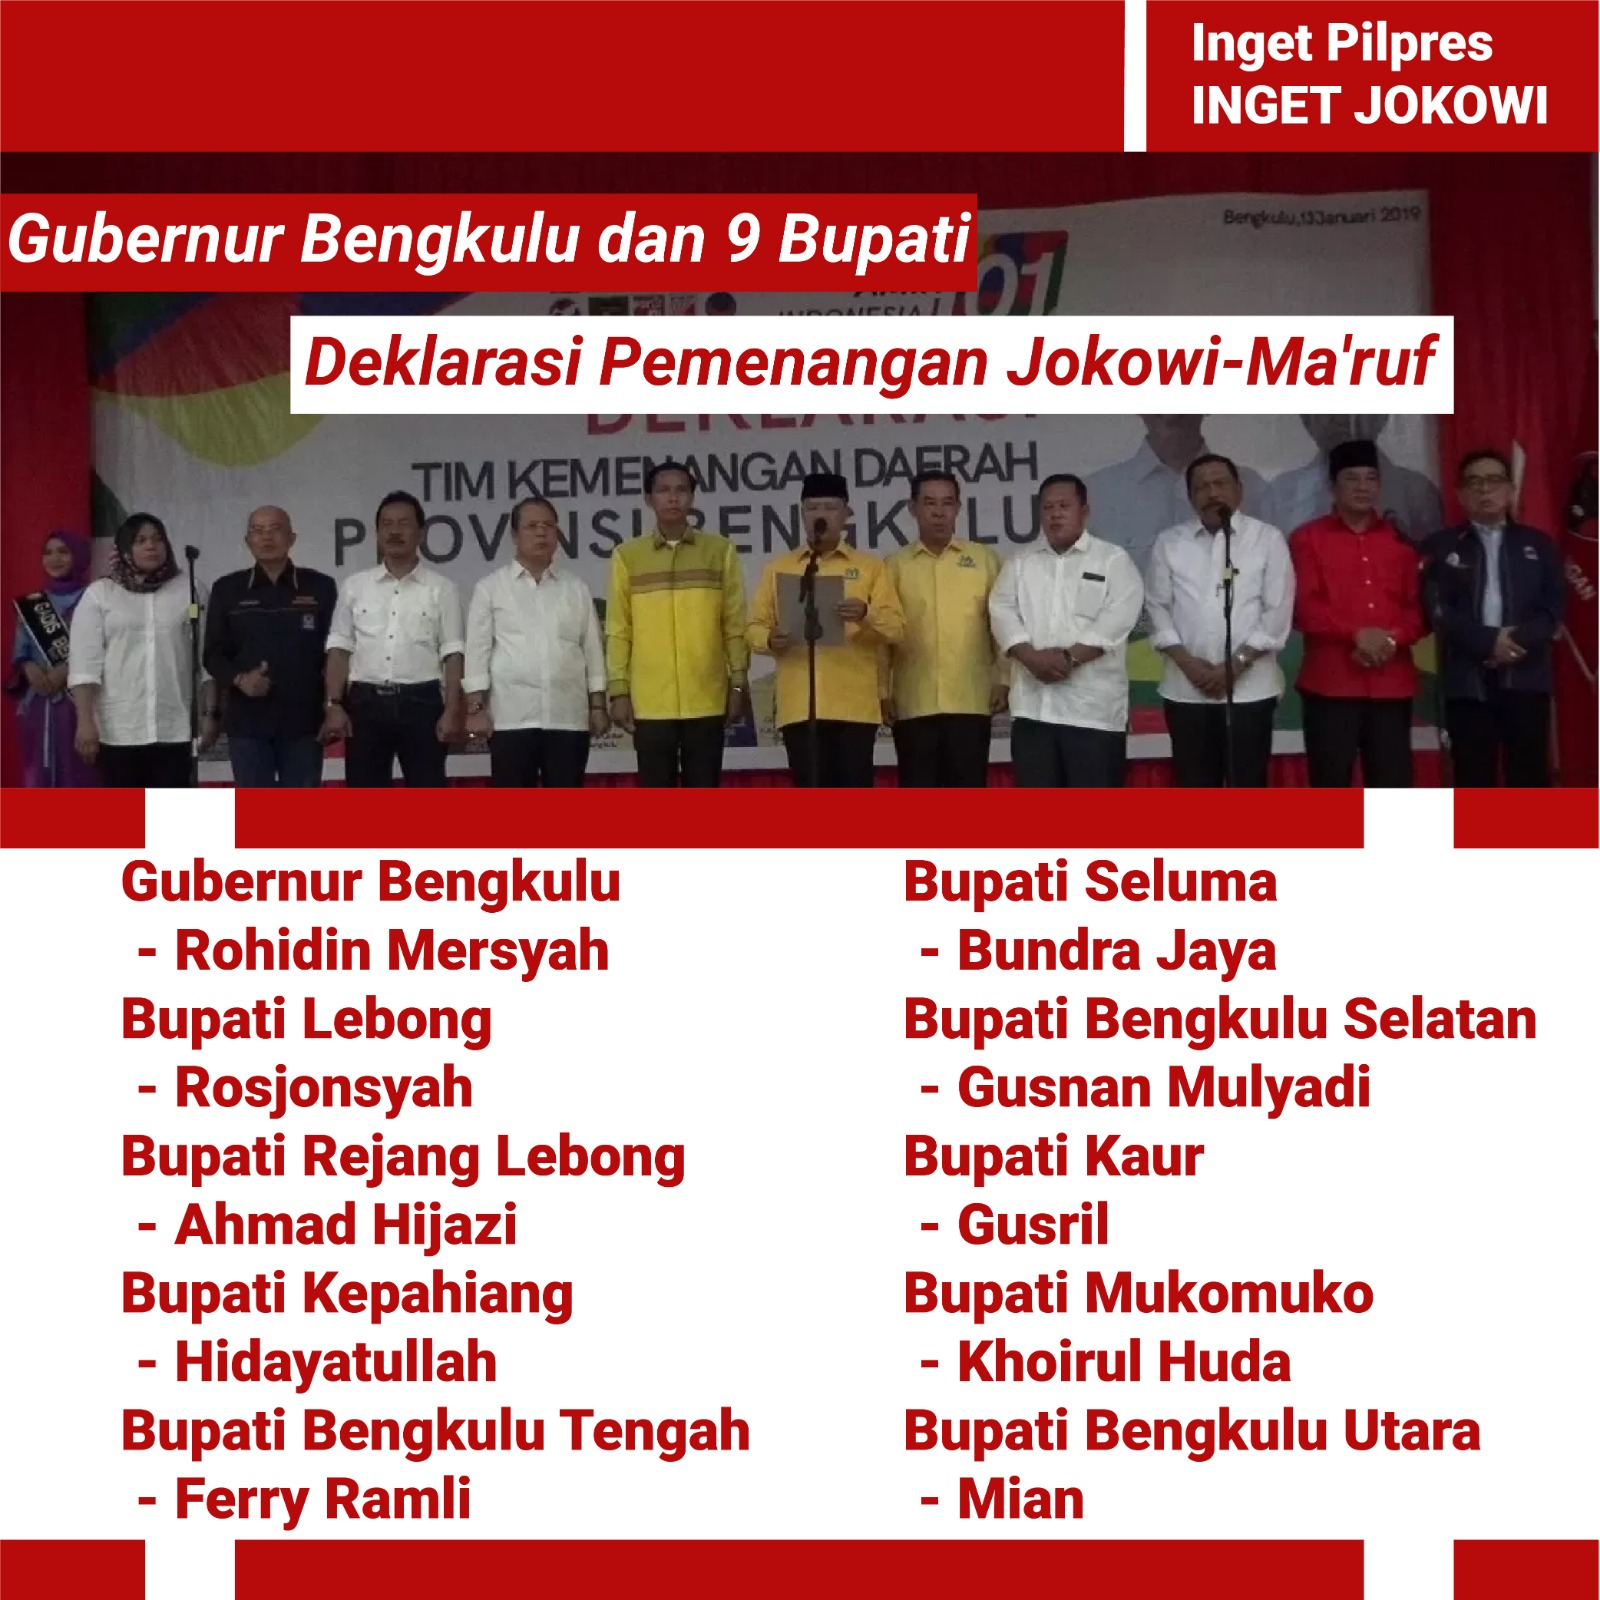 Gubernur Bengkulu Rohidin Mersyah Bersama 9 Bupati Menggelar Deklarasi Pemenangan Joko Widodo Maruf Amin